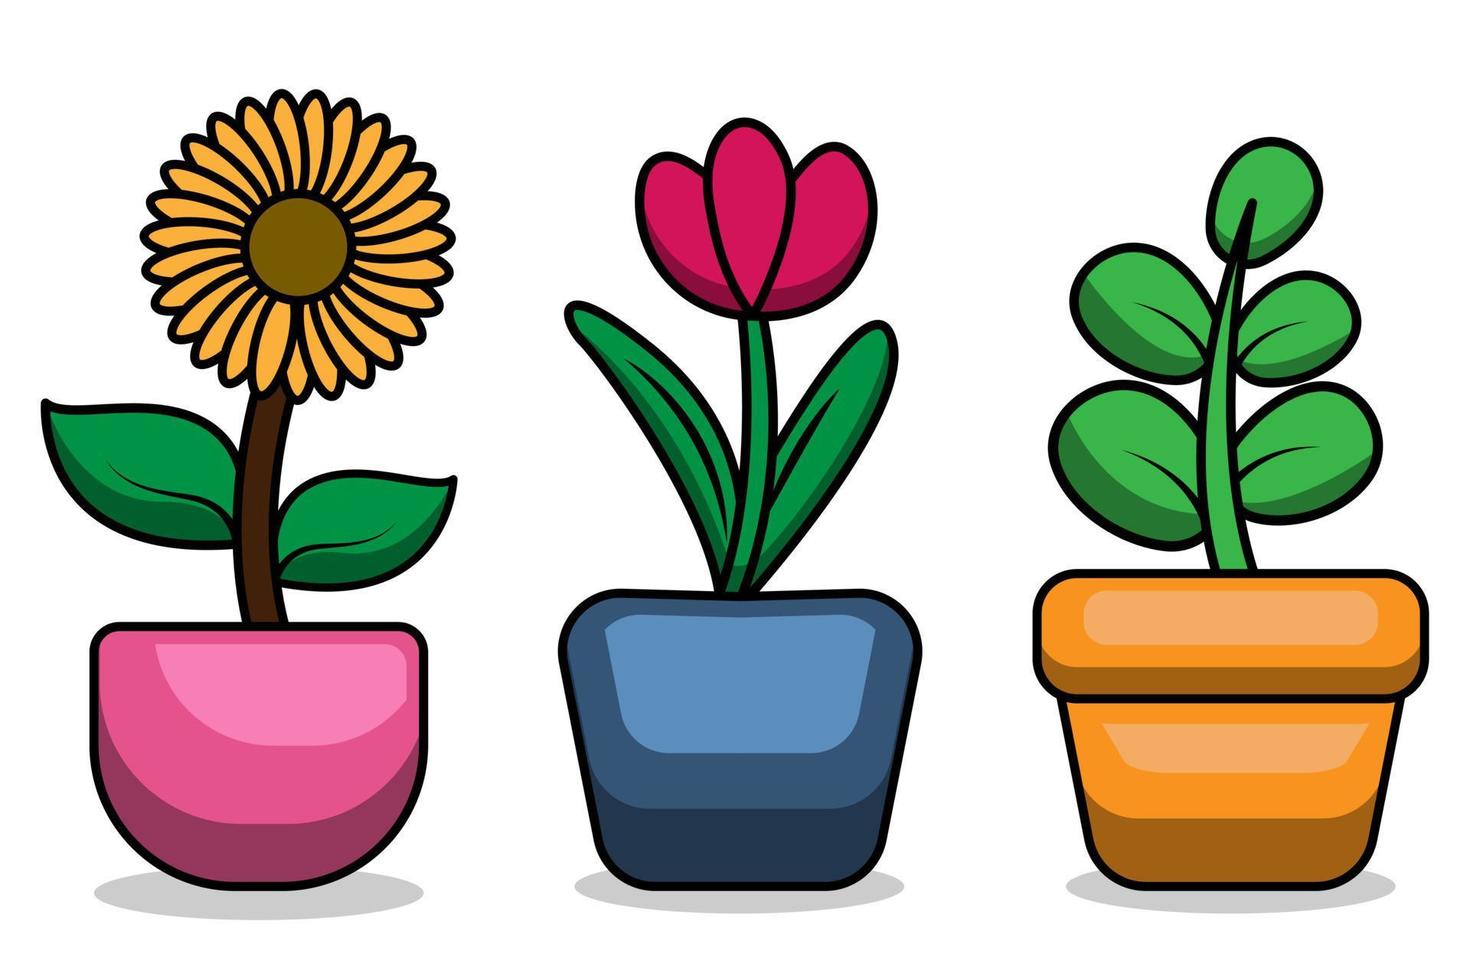 girasoli, tulipani e piante a foglia in vaso con un simpatico disegno vettoriale